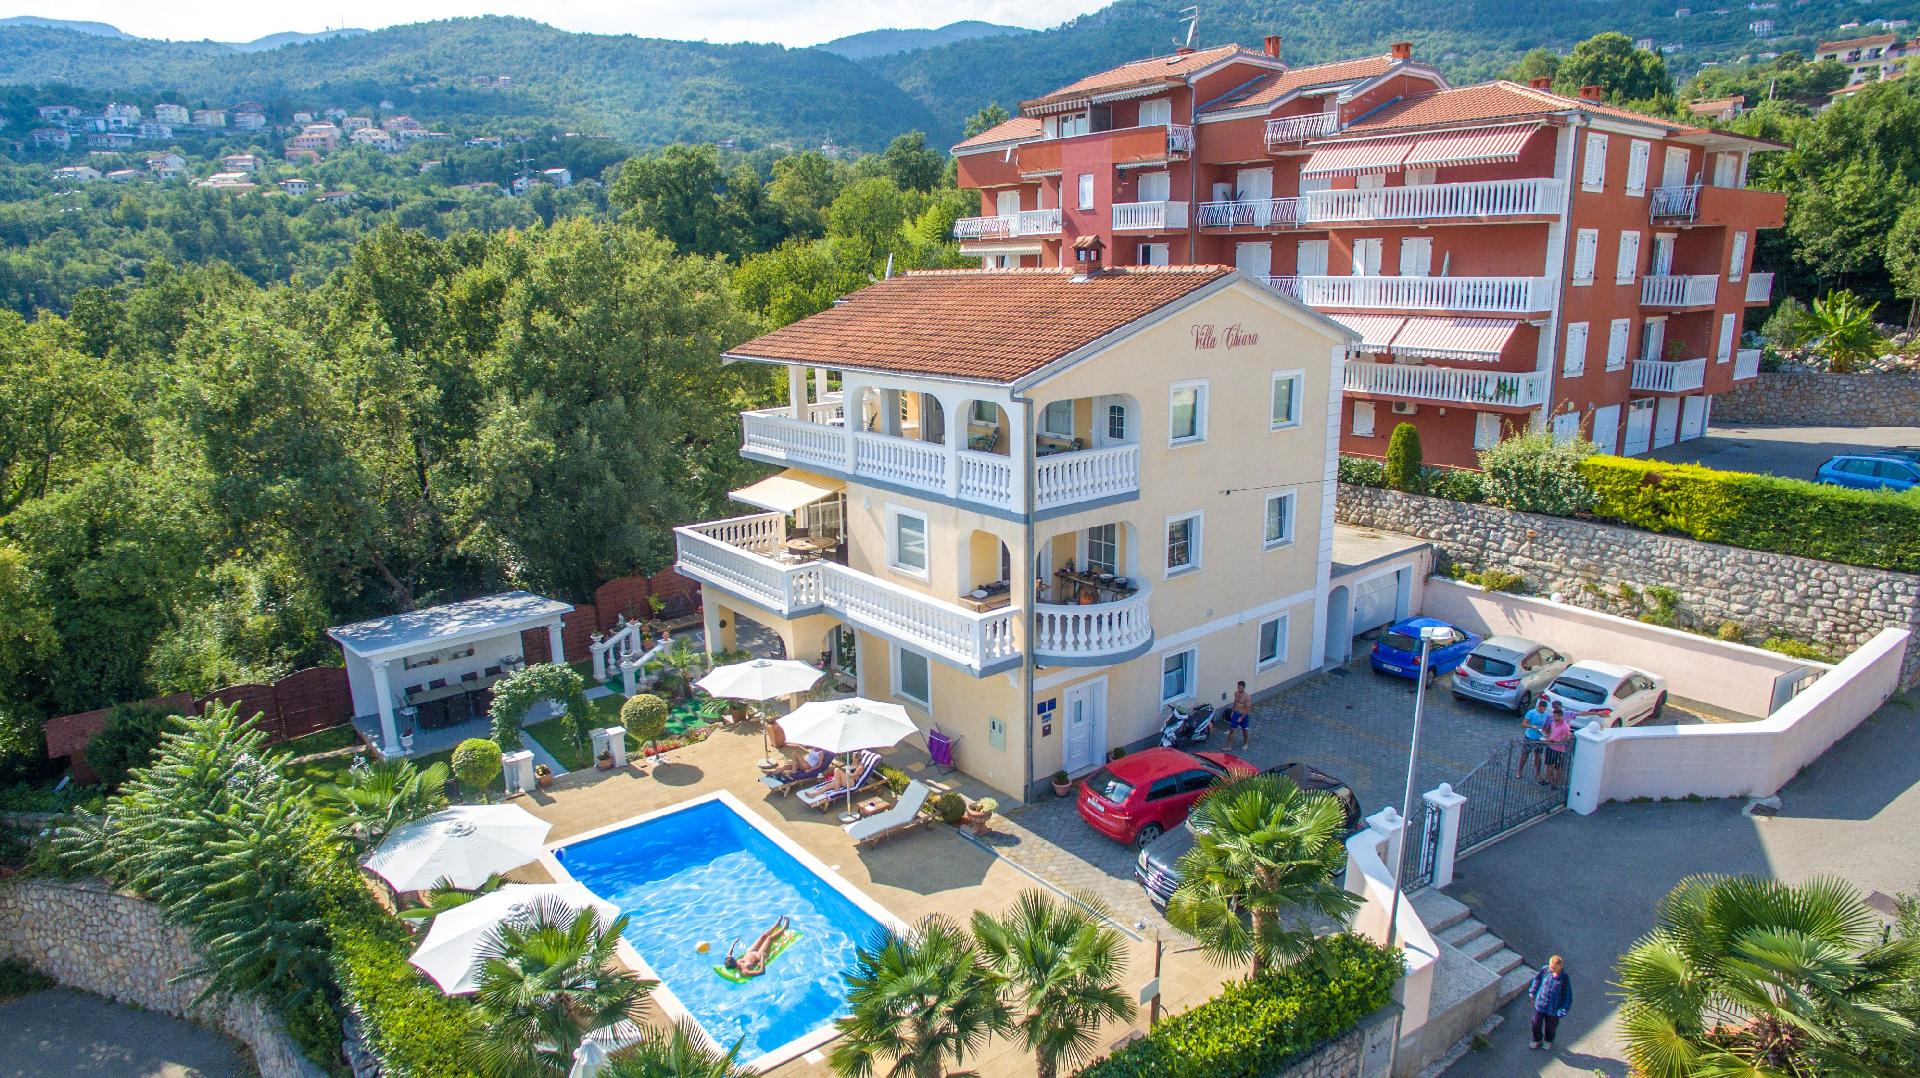 Ferienwohnung für 2 Personen  + 1 Kind ca. 40 Ferienhaus in Kroatien